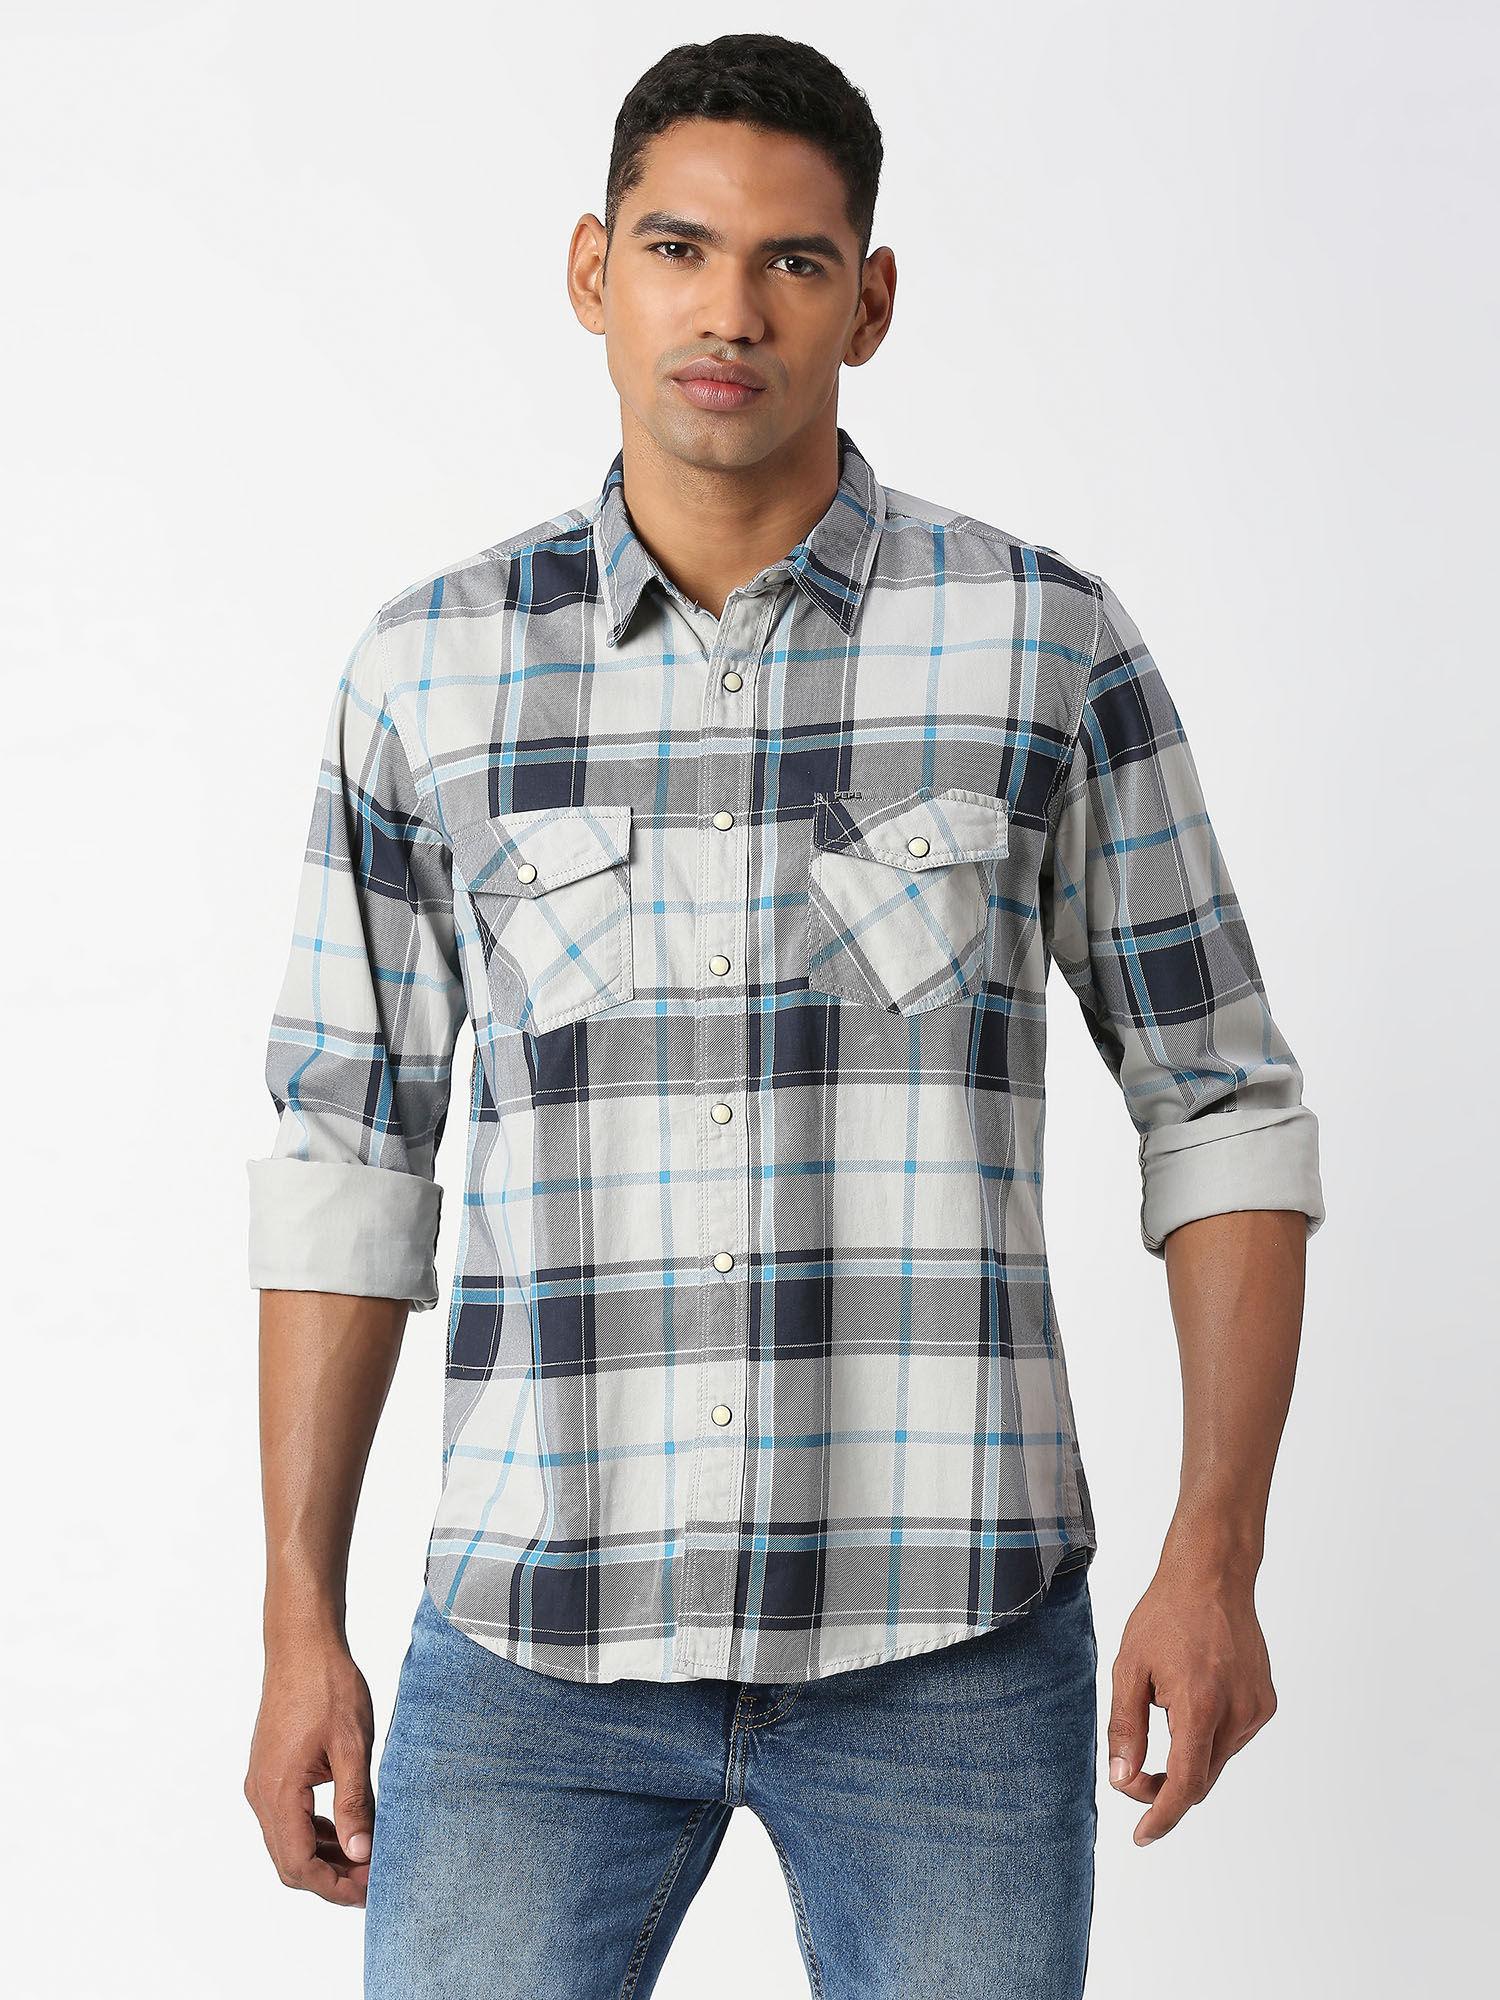 tusker full sleeves printed checks casual shirt